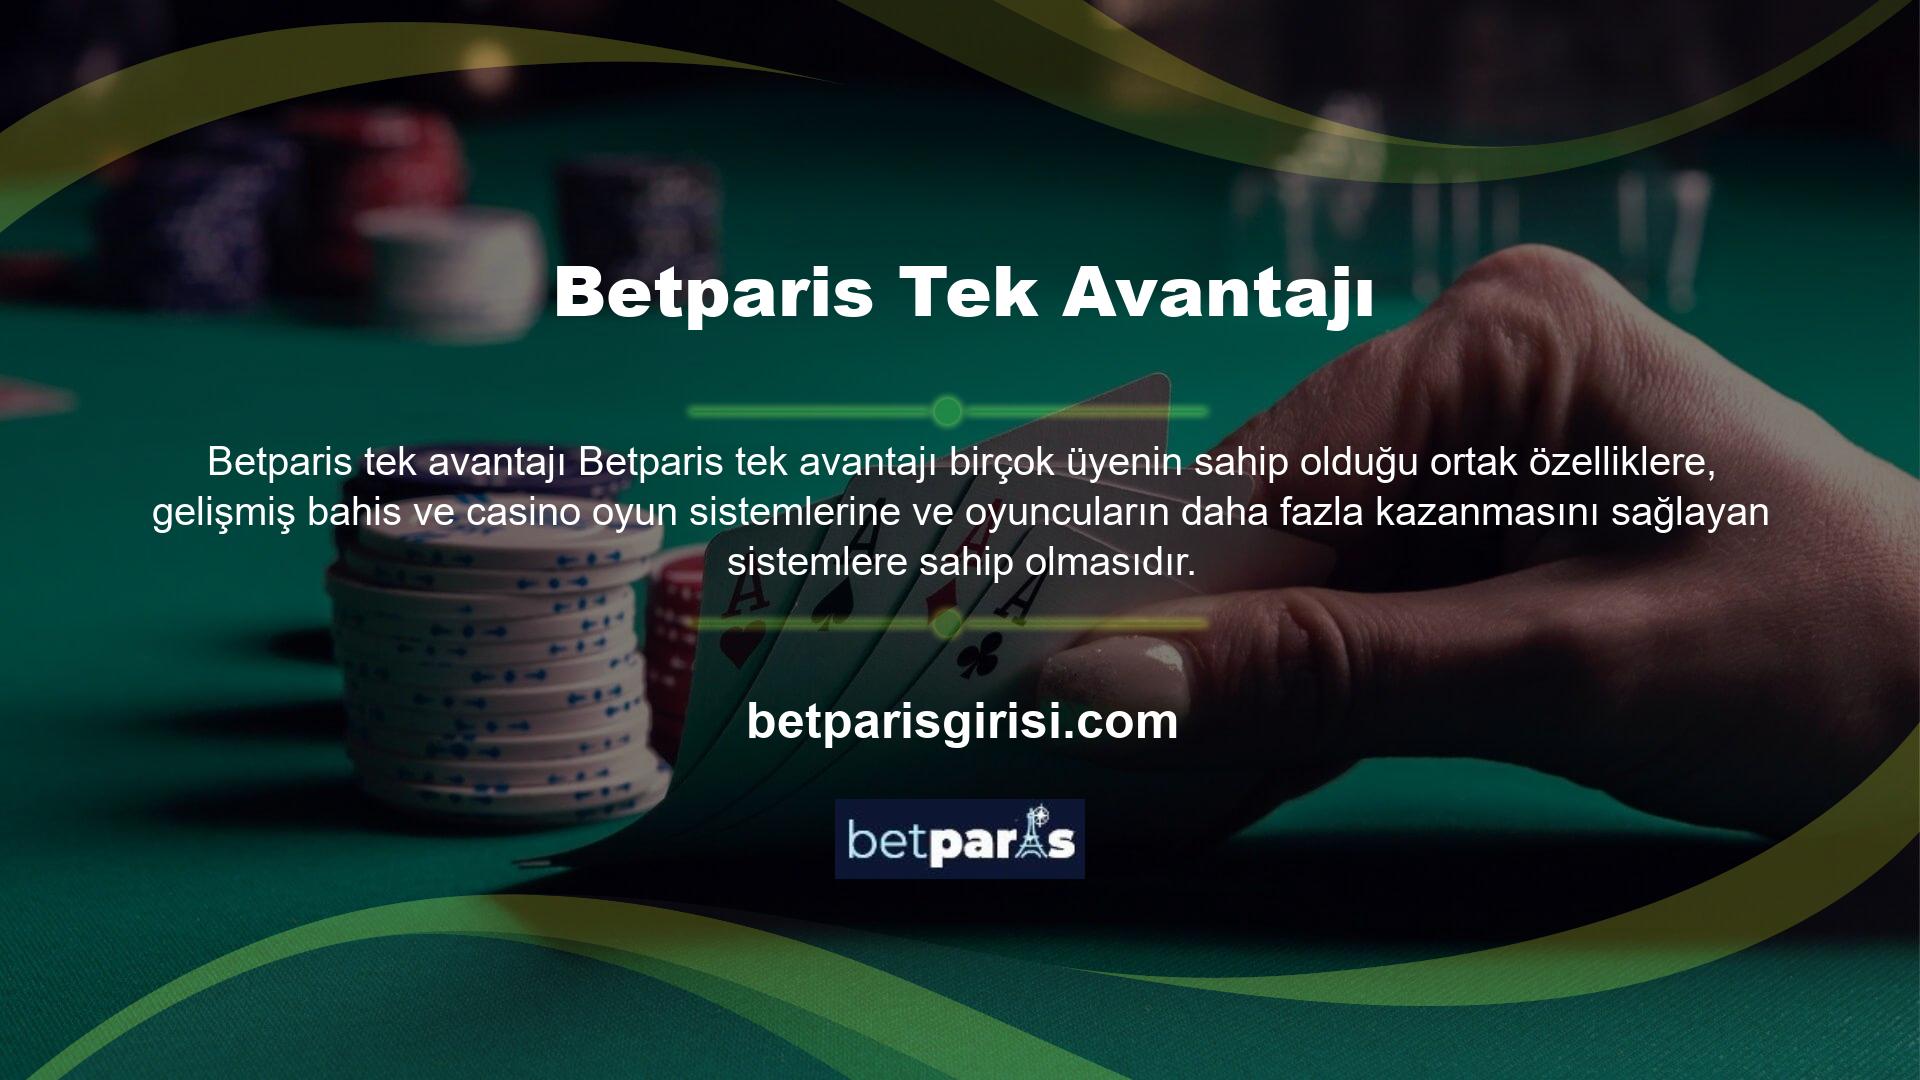 Betparis tarafından sunulan aşırı bahis, büyük kazanma potansiyeline sahiptir ve casino özellikleri, maç bahis özellikleri, canlı bahis, canlı casino alternatifleri ve oyuncular arasında seçim yapmak için yaygın bir neden olarak kabul edilir